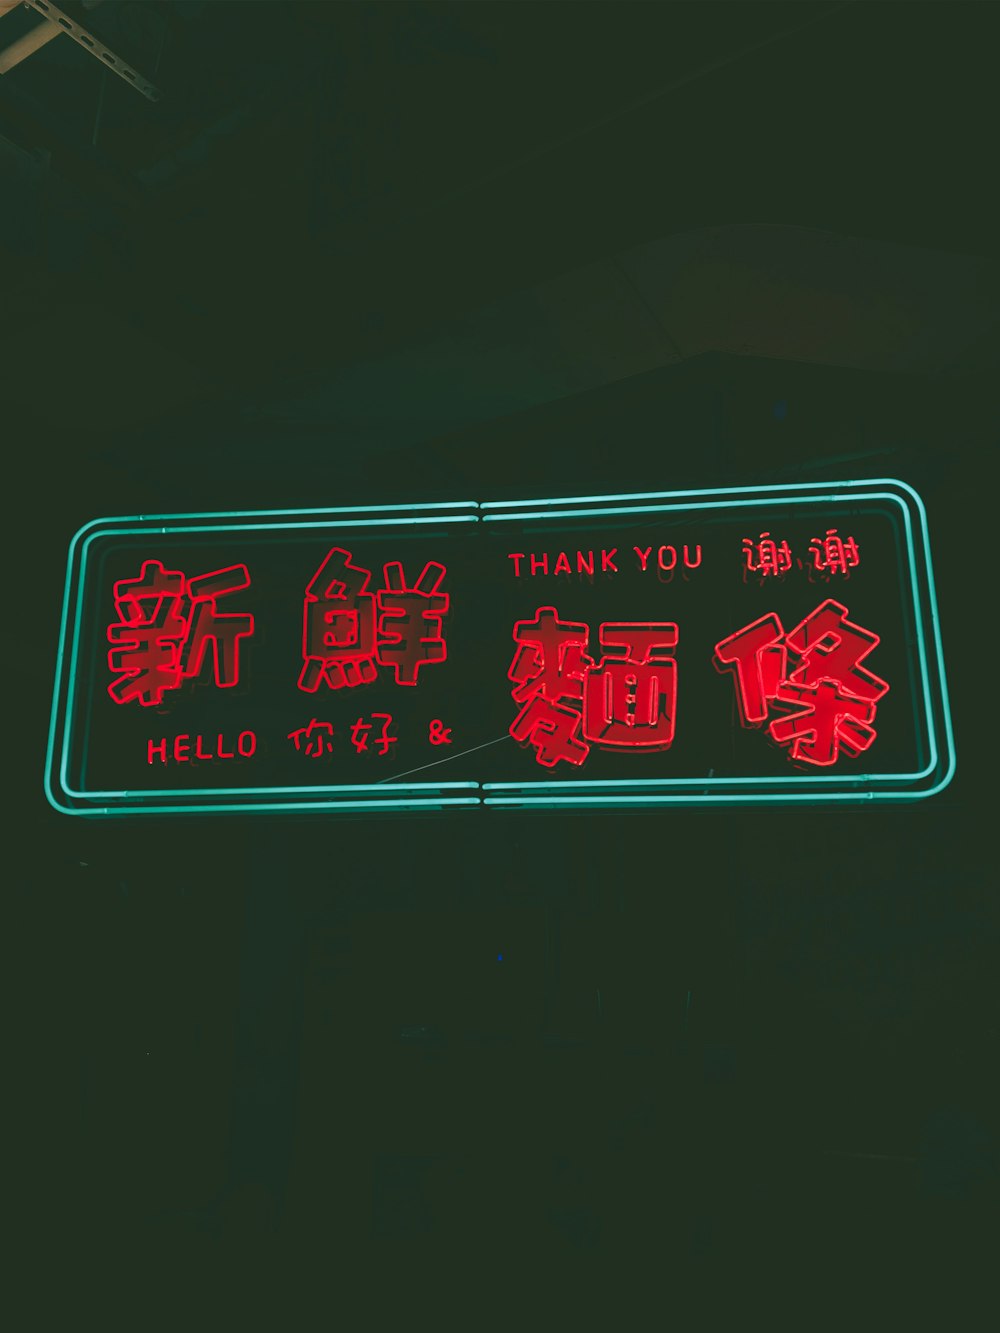 ありがとうとこんにちはのネオンサインが入った赤い漢字テキスト